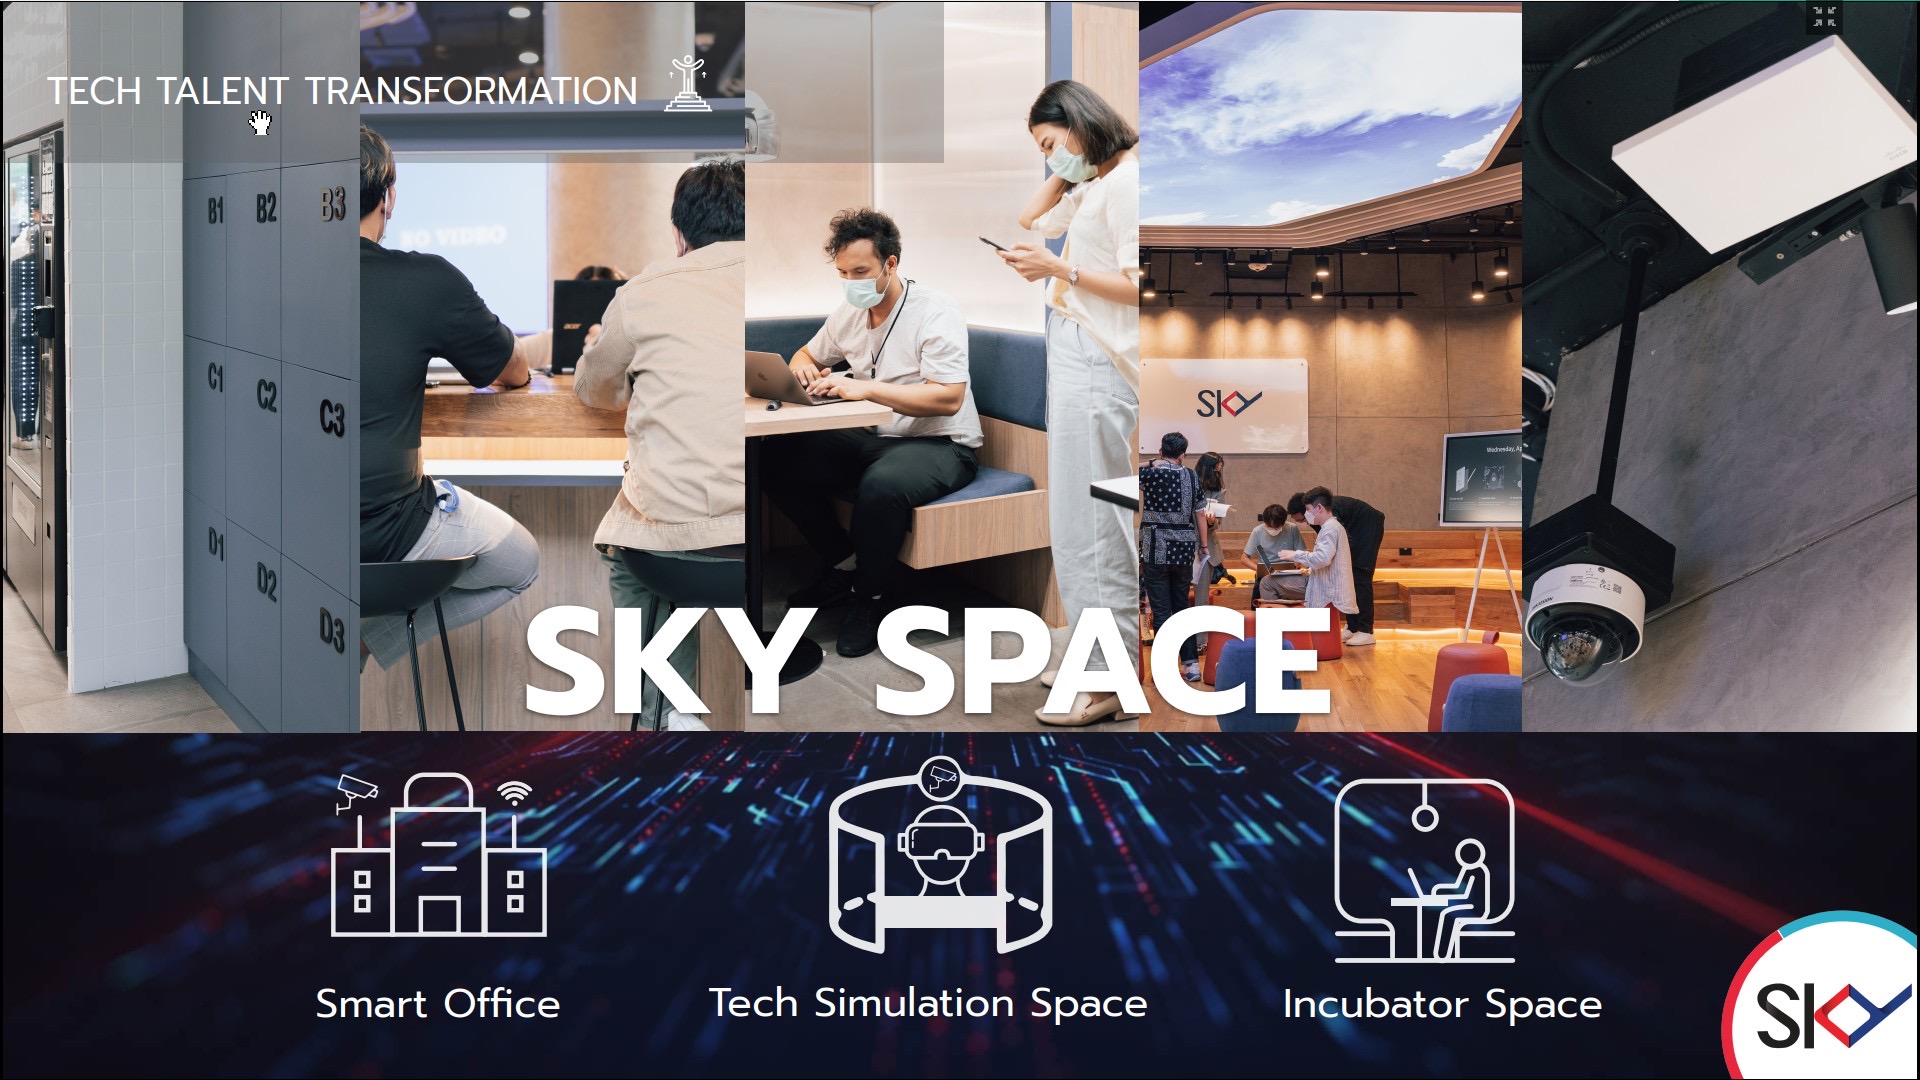 สกาย ไอซีที กางแผนเชื่อมเทคโนโลยีทันสมัยขับเคลื่อนอนาคตประเทศ เปิดตัว SKY Space พื้นที่ Hybrid Function ตอบโจทย์ลูกค้า-การพัฒนา Tech Talent รุ่นใหม่